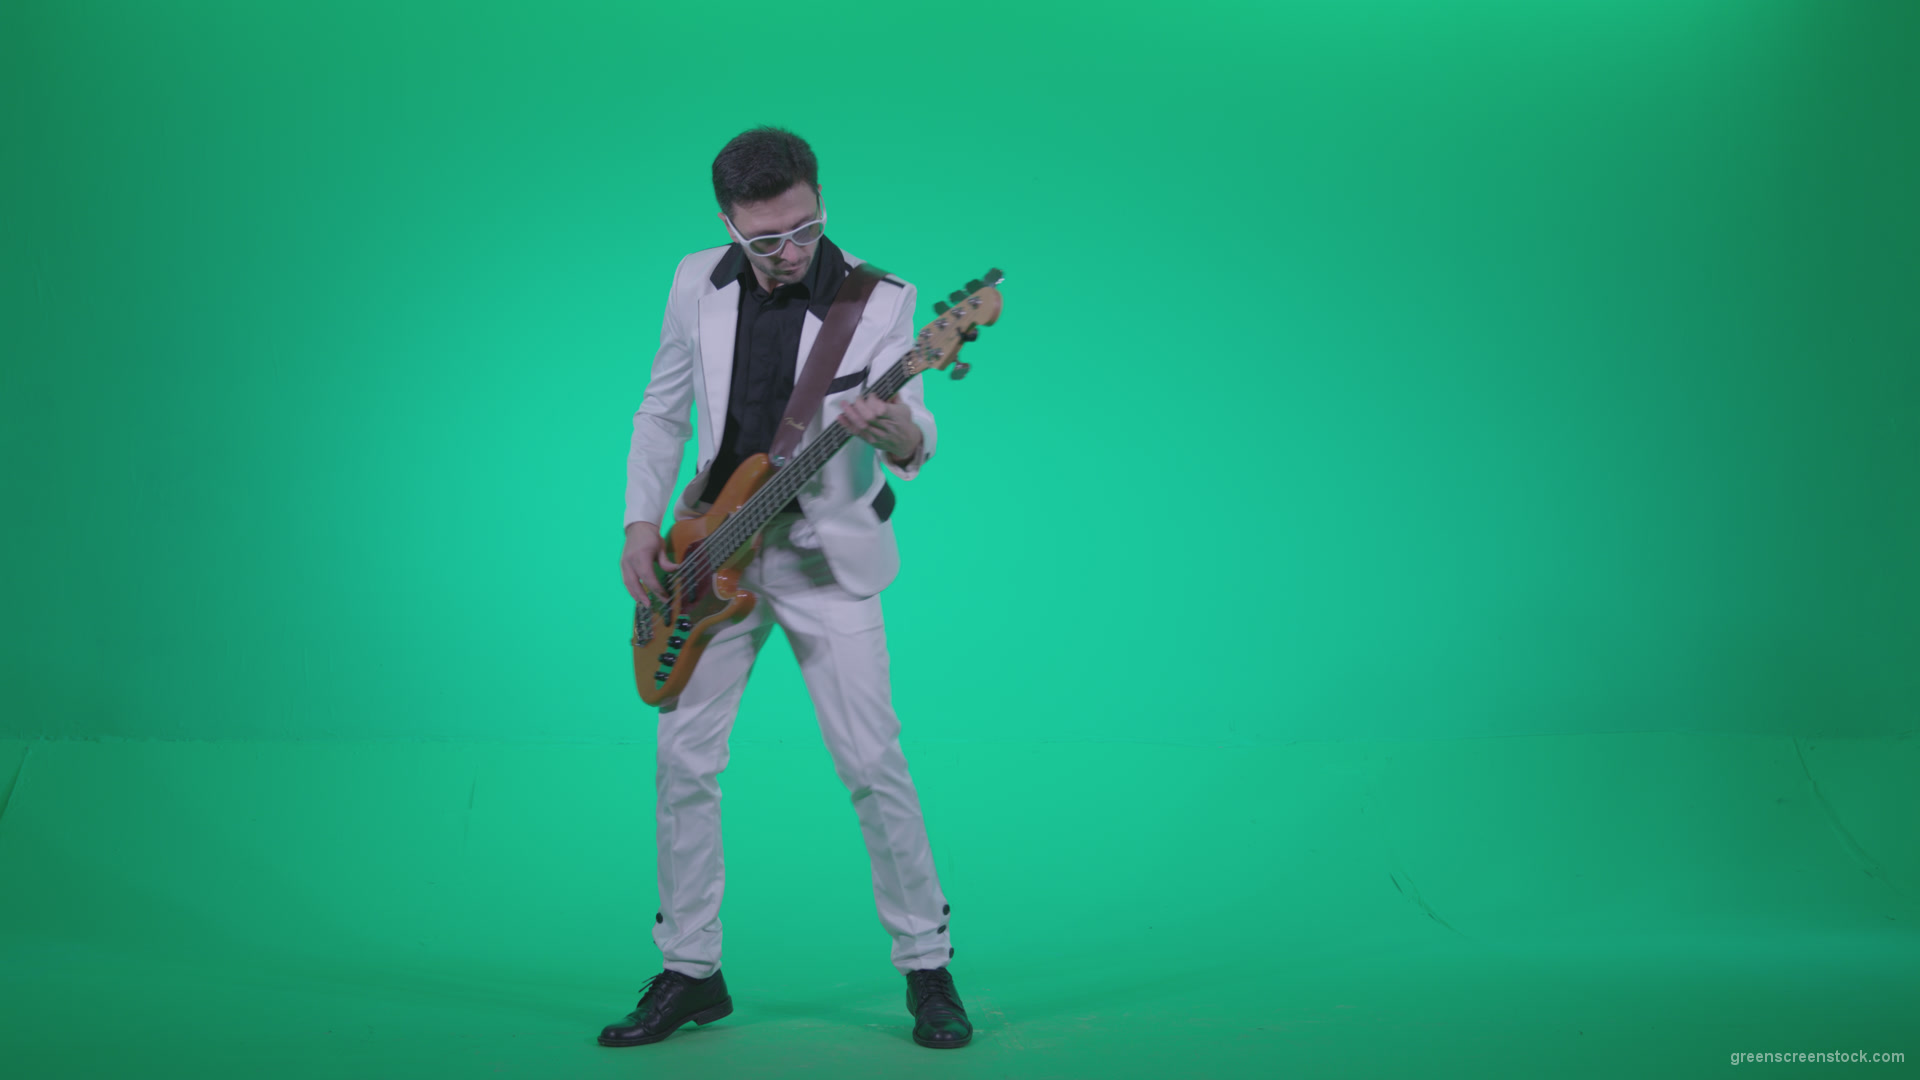 Bass-Jazz-Performer-3_007 Green Screen Stock